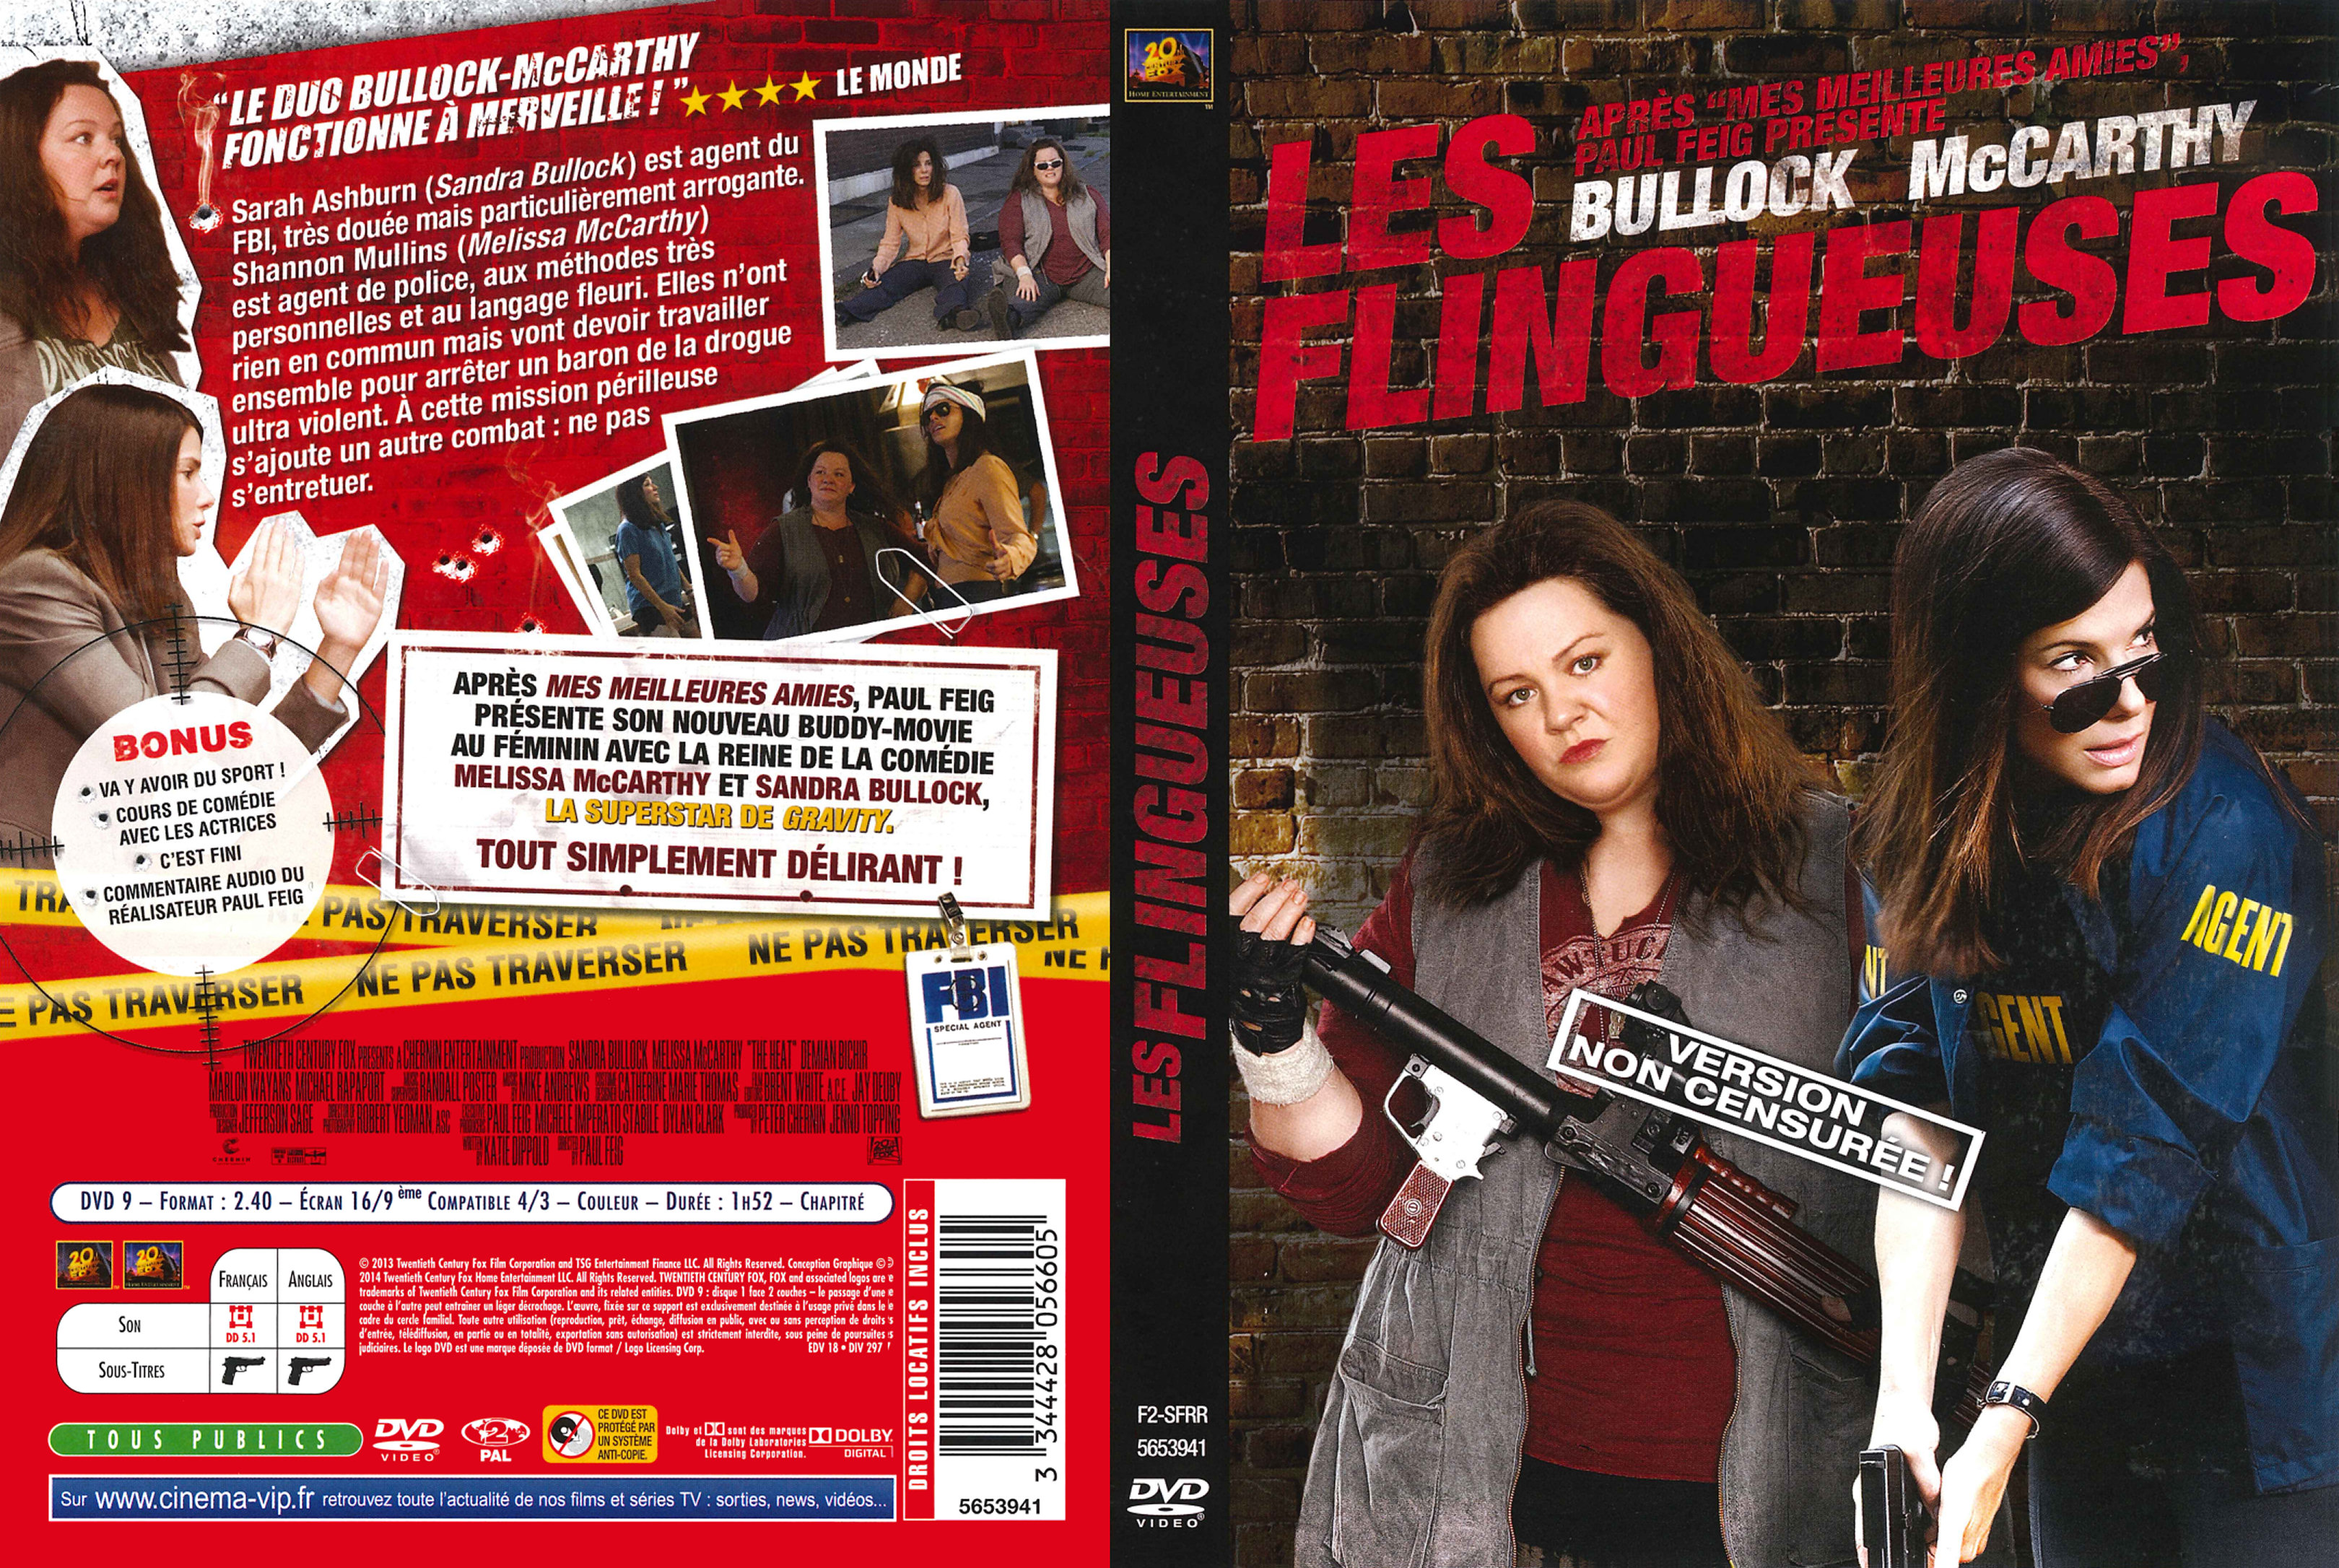 Jaquette DVD Les Flingueuses